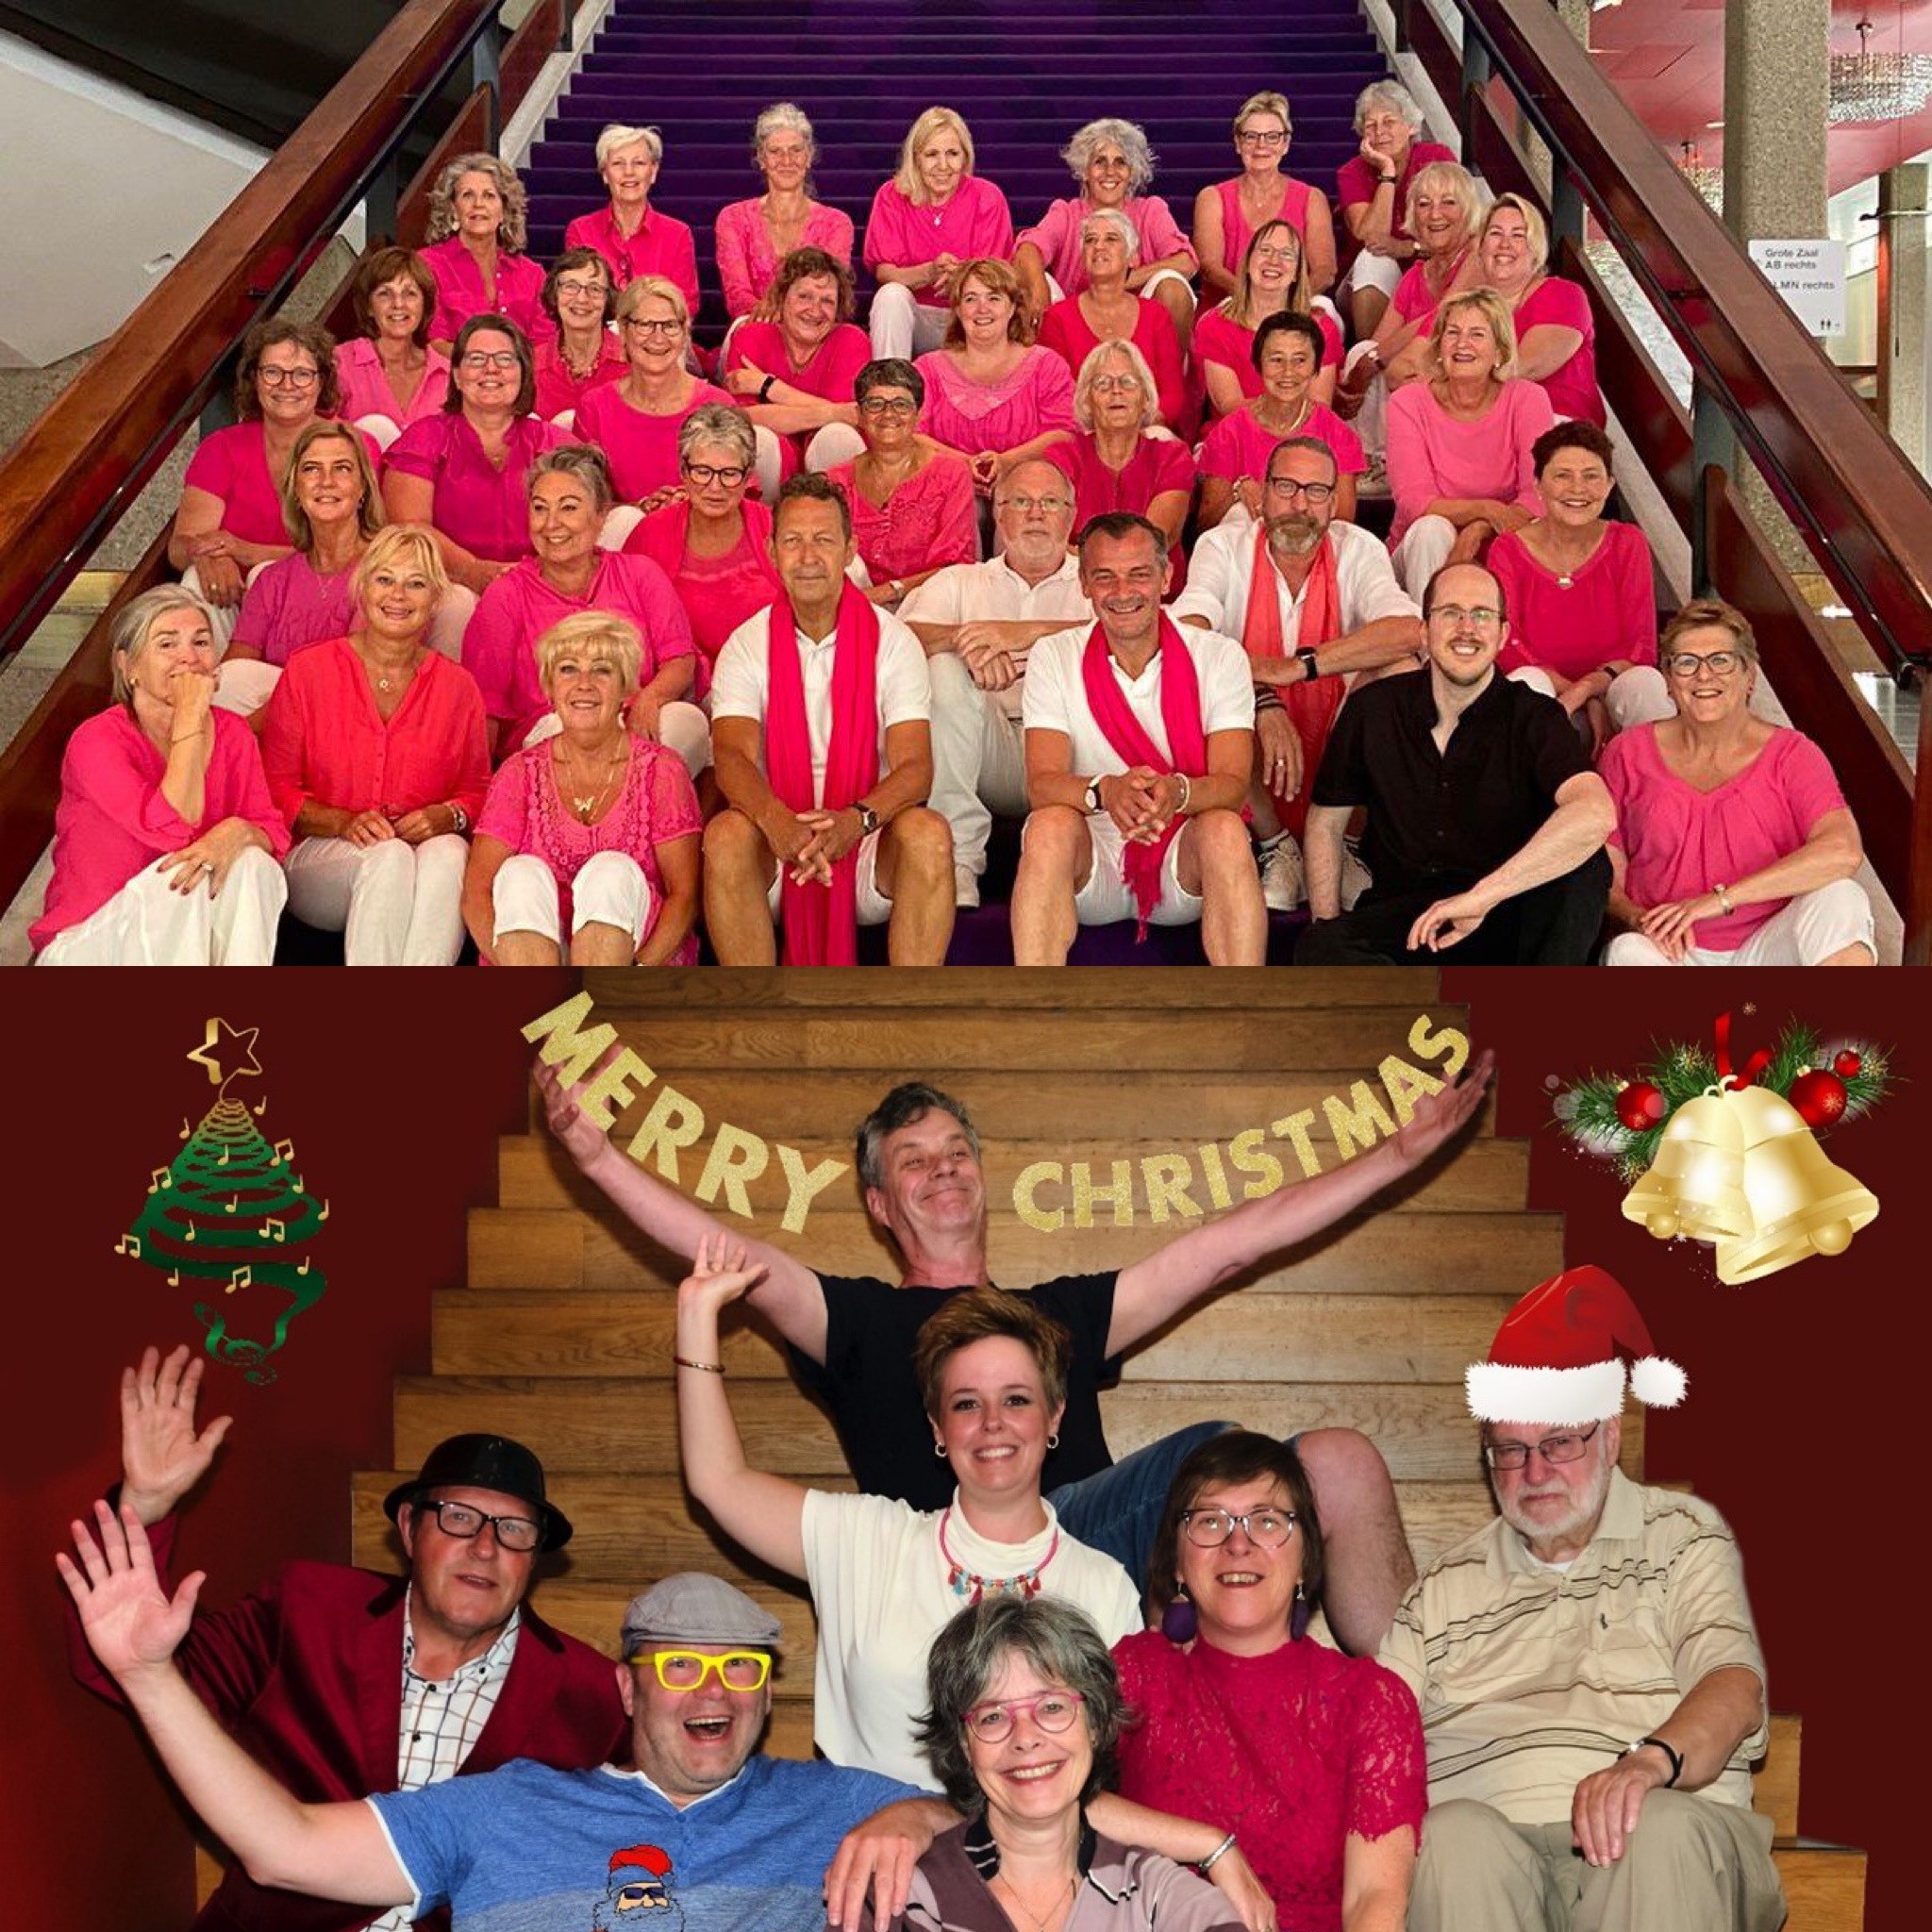 Popkoor Rebound zit op de trap, allemaal in roze en wit gekleed. Foto eronder staat Gouds Muziektheater onder slinger met "Merry Christmas"